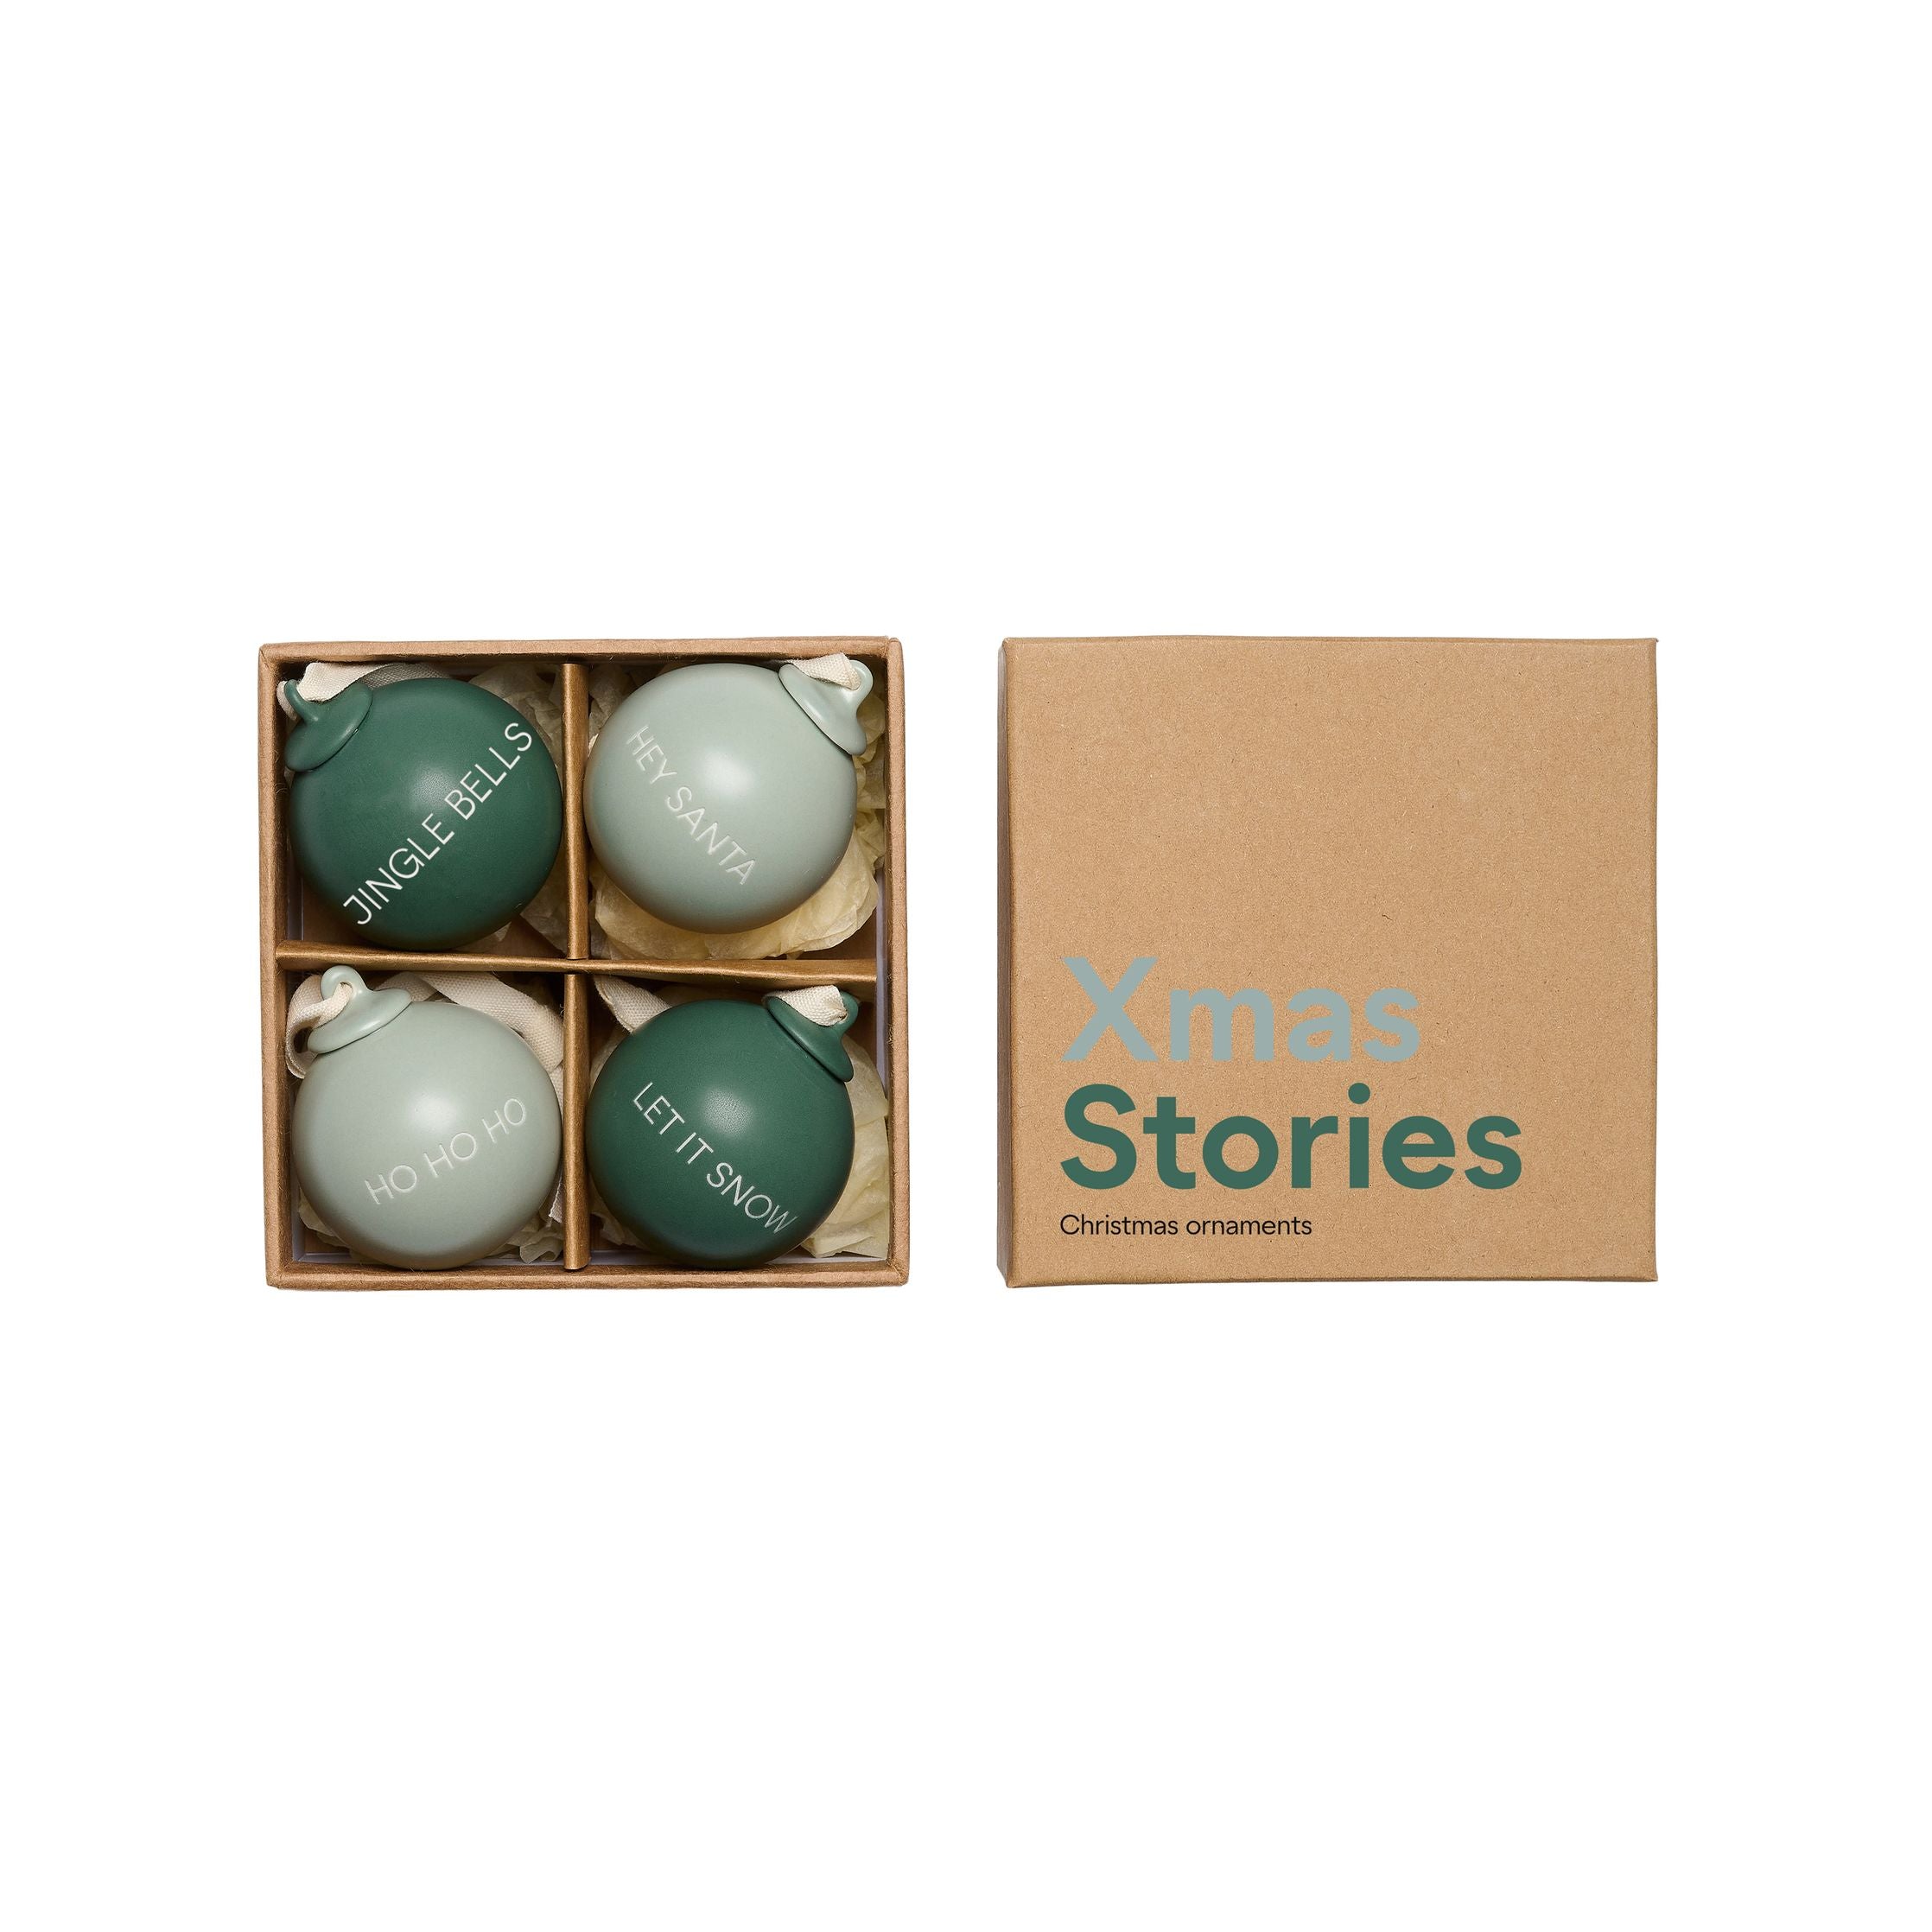 Letras de diseño historias de Navidad colgantes de pelota 40 mm (conjunto de 4 piezas), verde oscuro/verde polvoriento